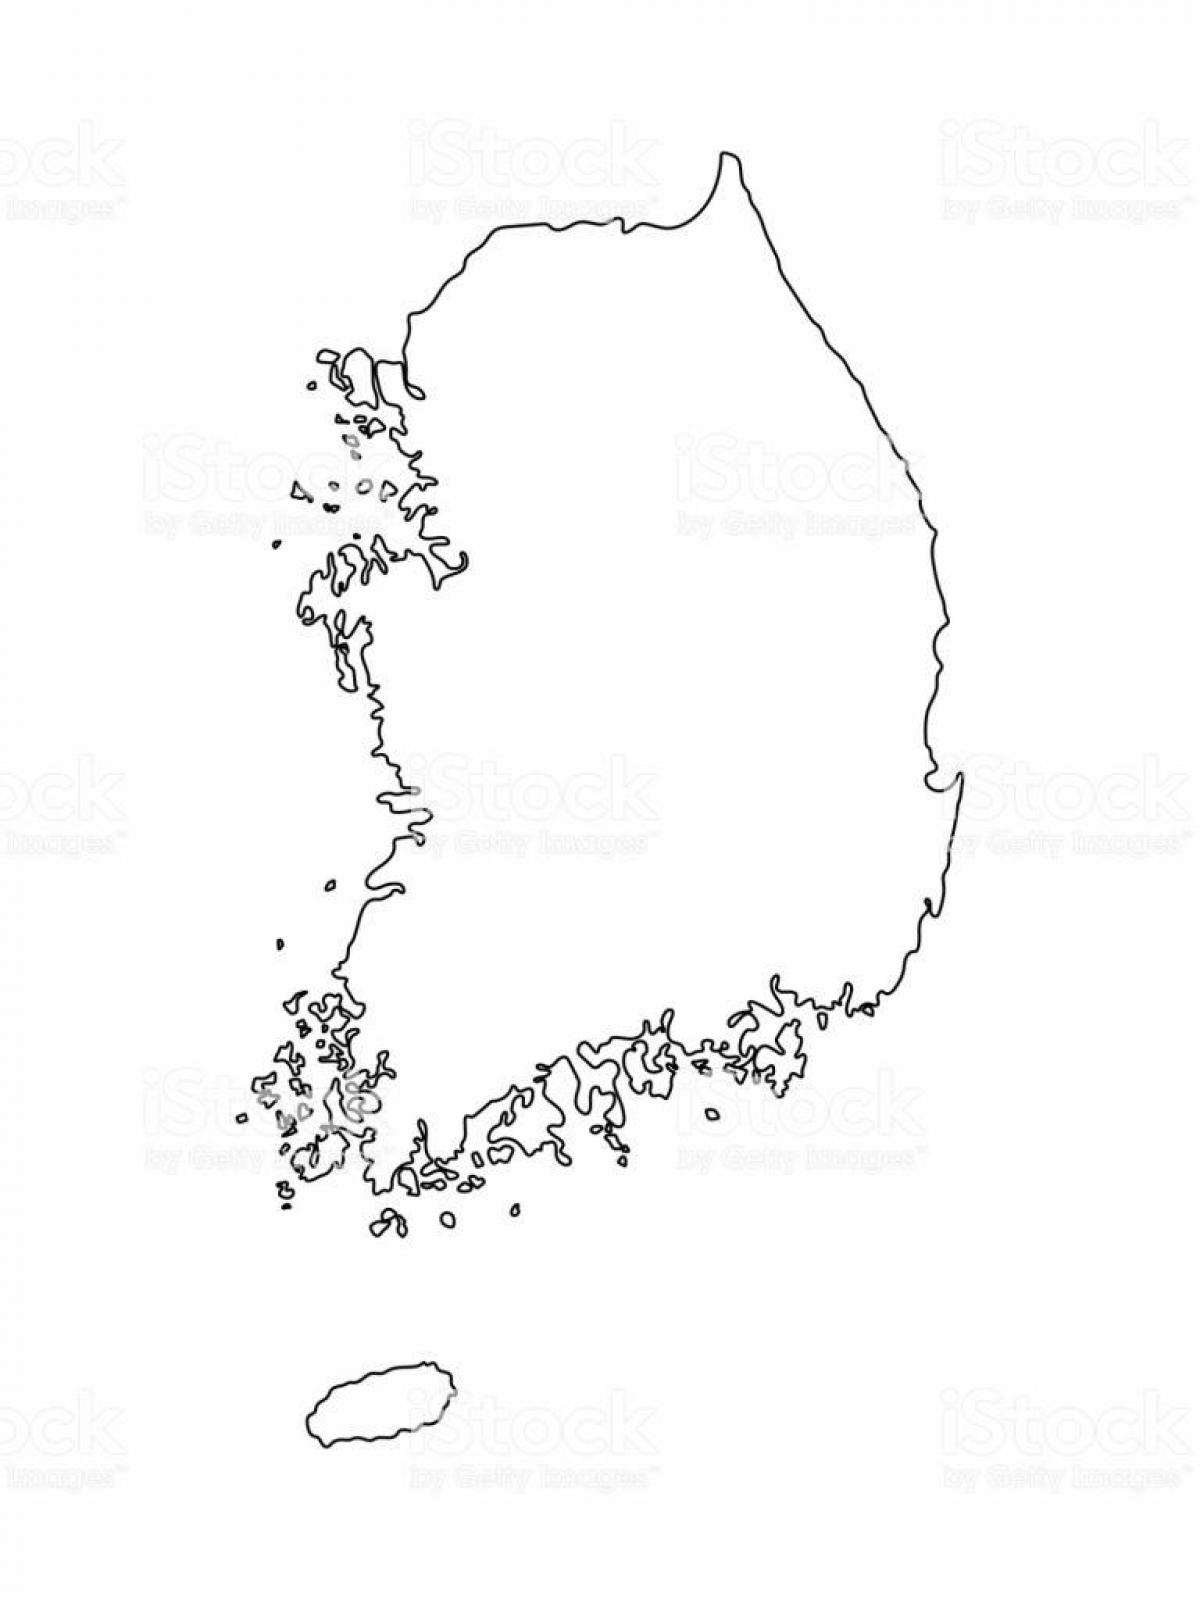 Lege Zuid-Koreaanse kaart (ROK)